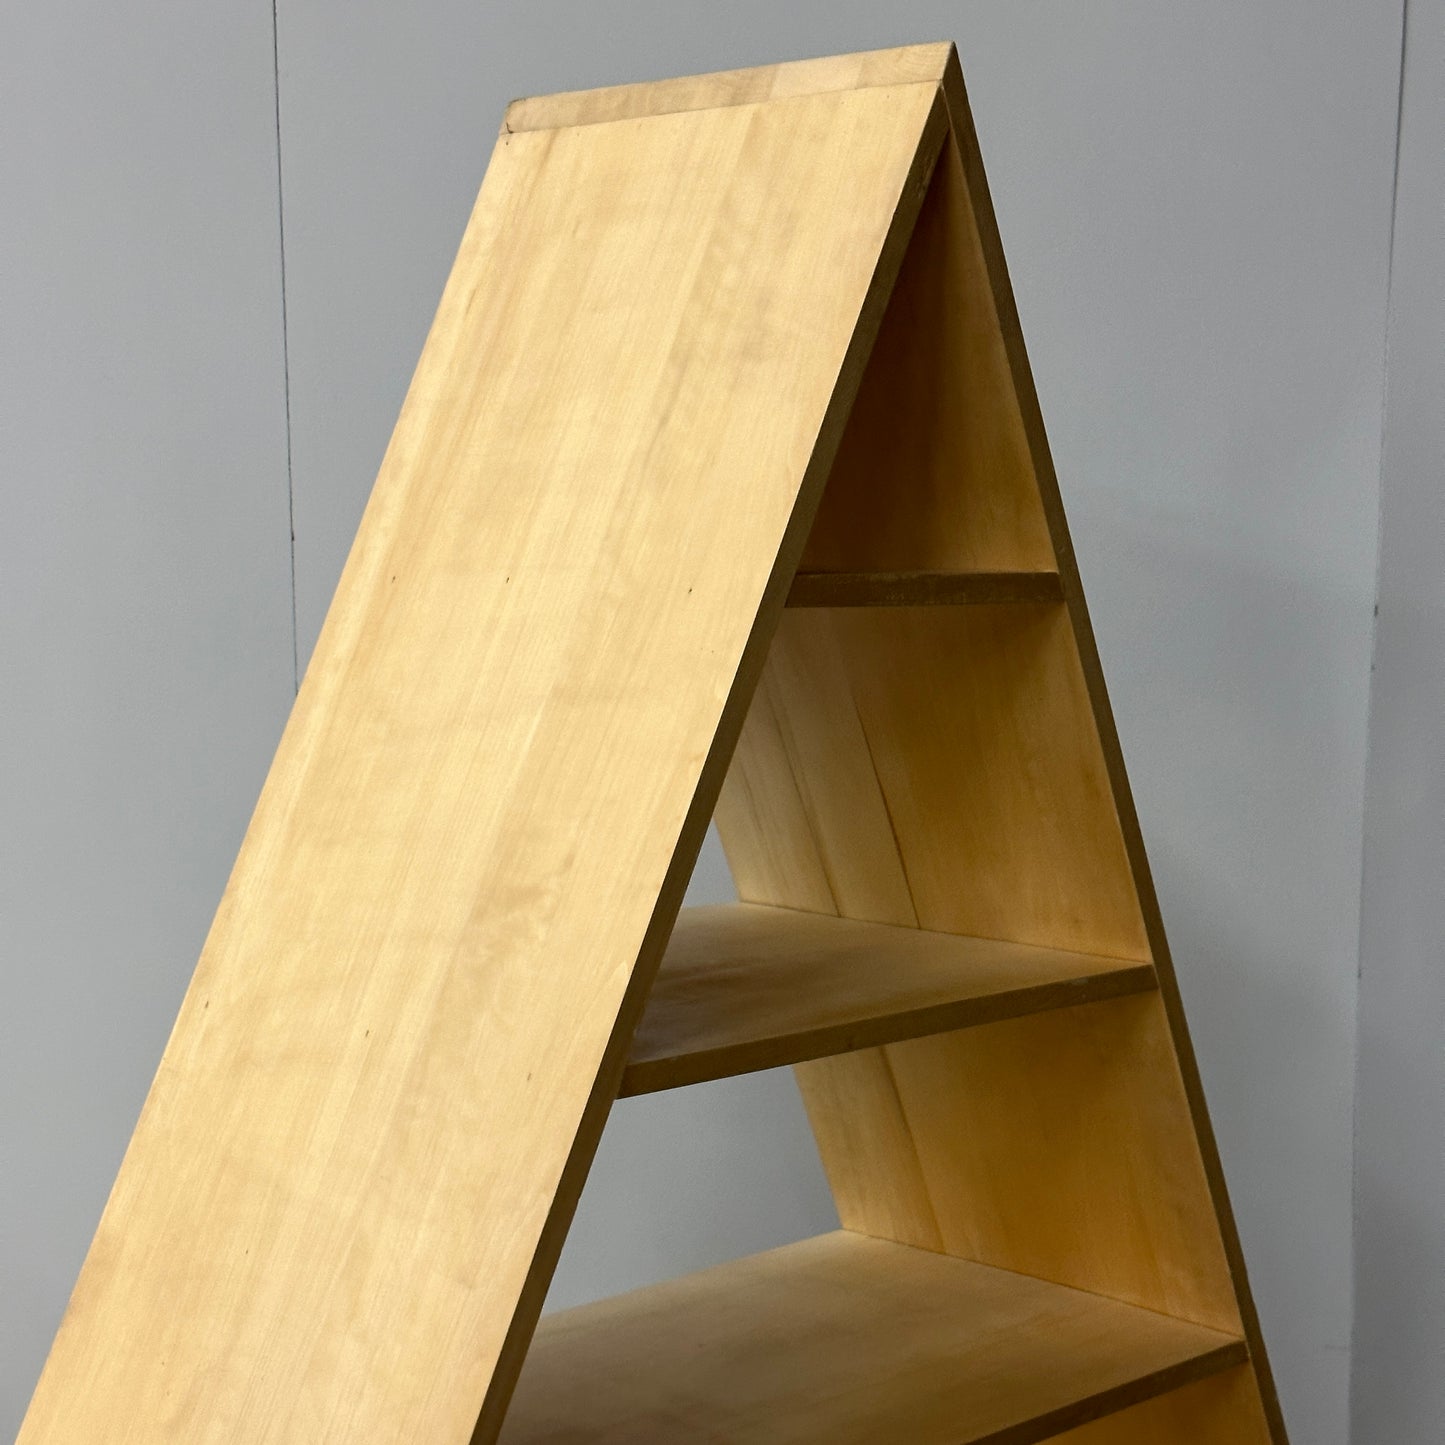 Handmade Triangle Shelves